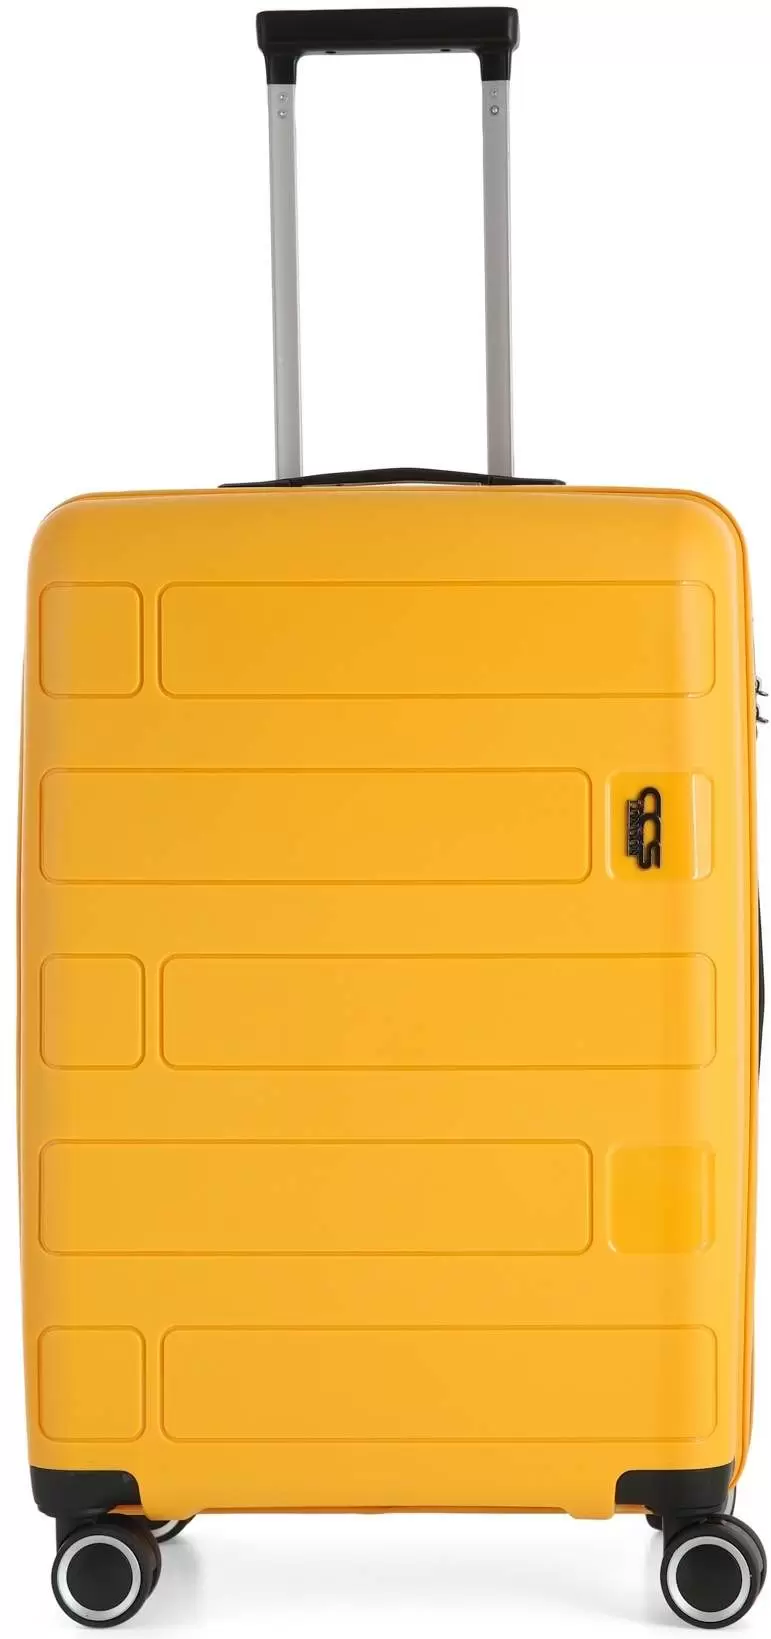 Set de valize CCS 5236 Set, galben